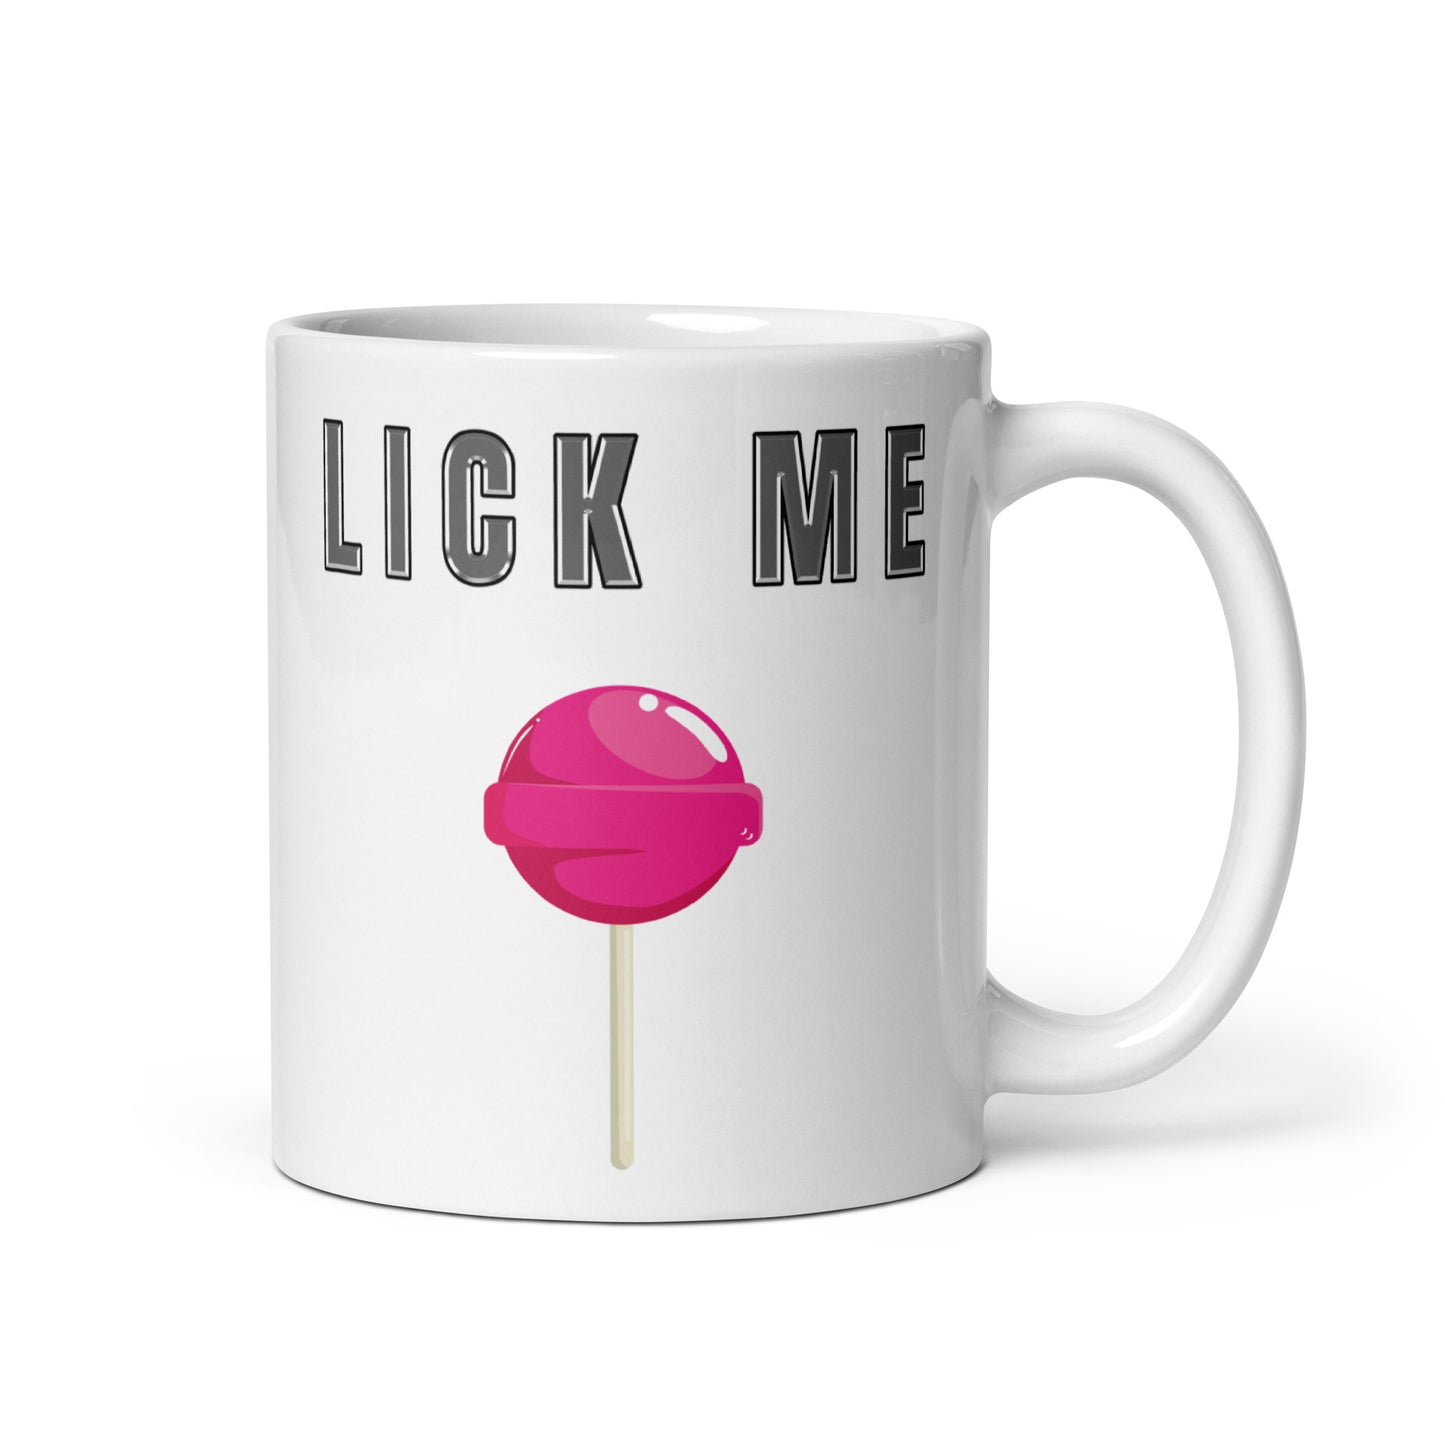 Lick Me Mug